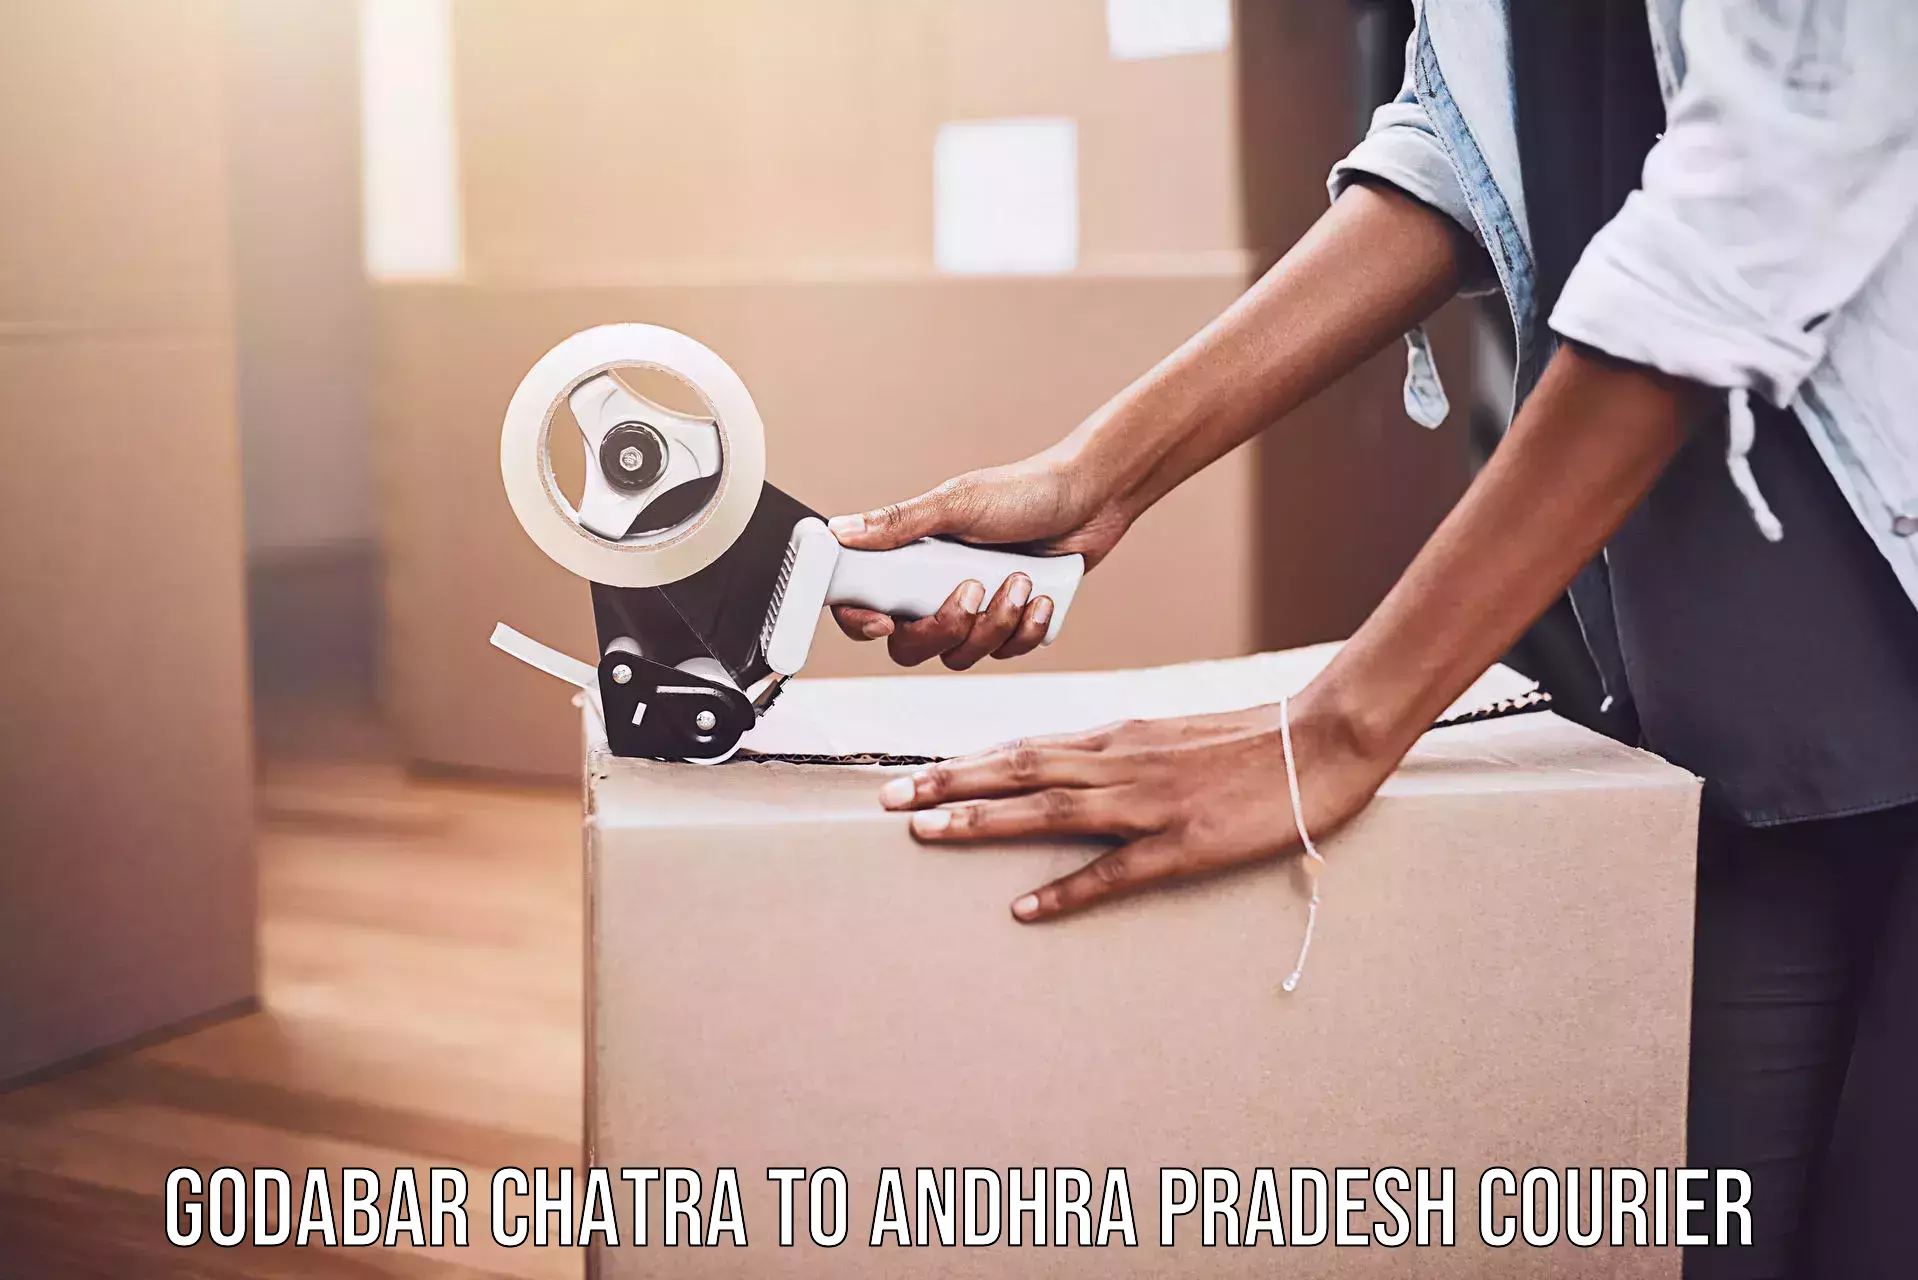 Comprehensive freight services Godabar Chatra to Andhra Pradesh